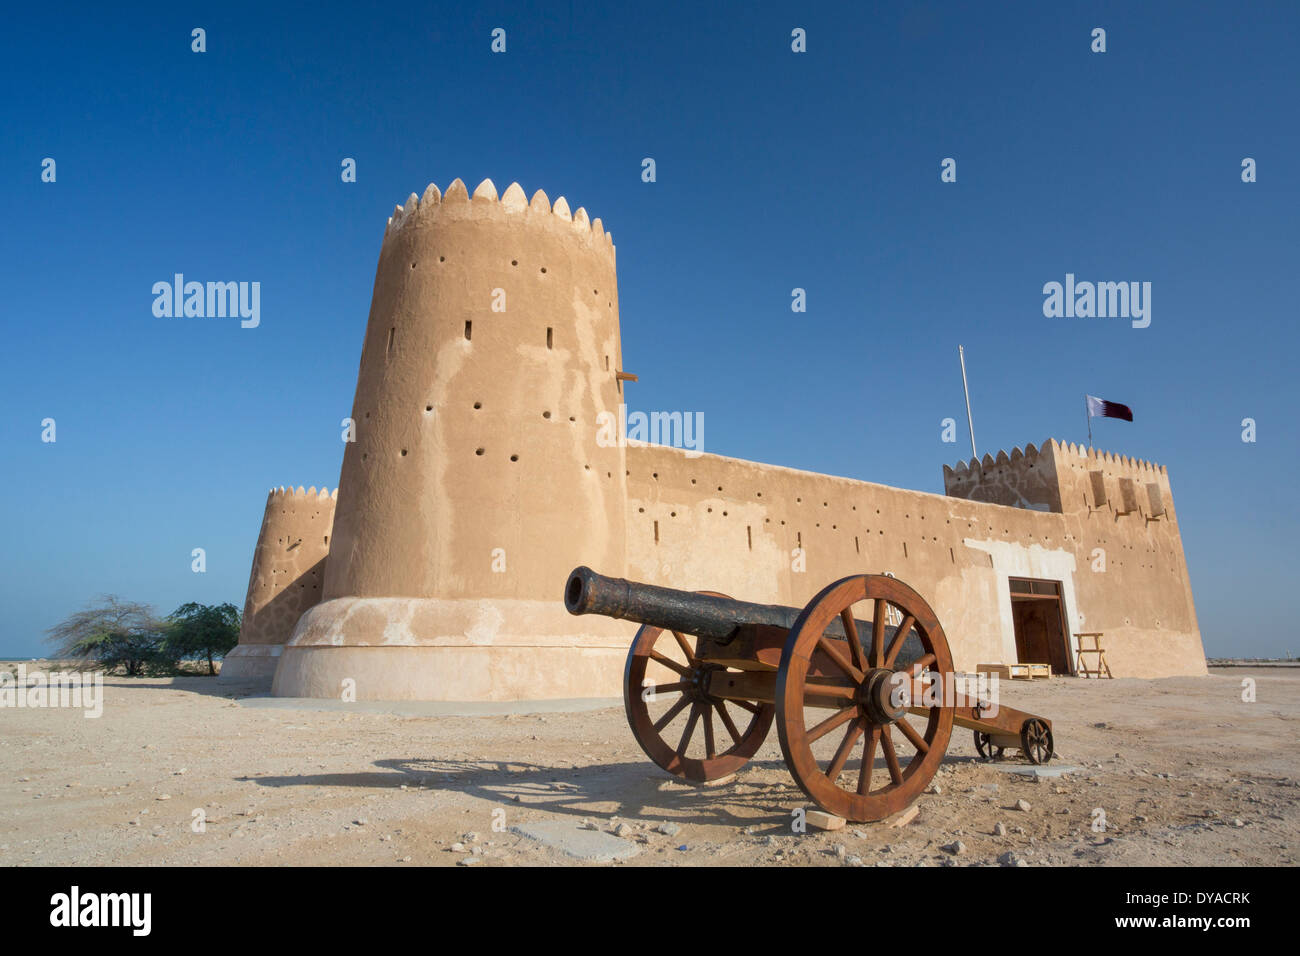 Pistola fortificazione Patrimonio Mondiale Al Zubarah Qatar Medio Oriente architettura canon landmark fort storia museo sito onu di viaggio Foto Stock